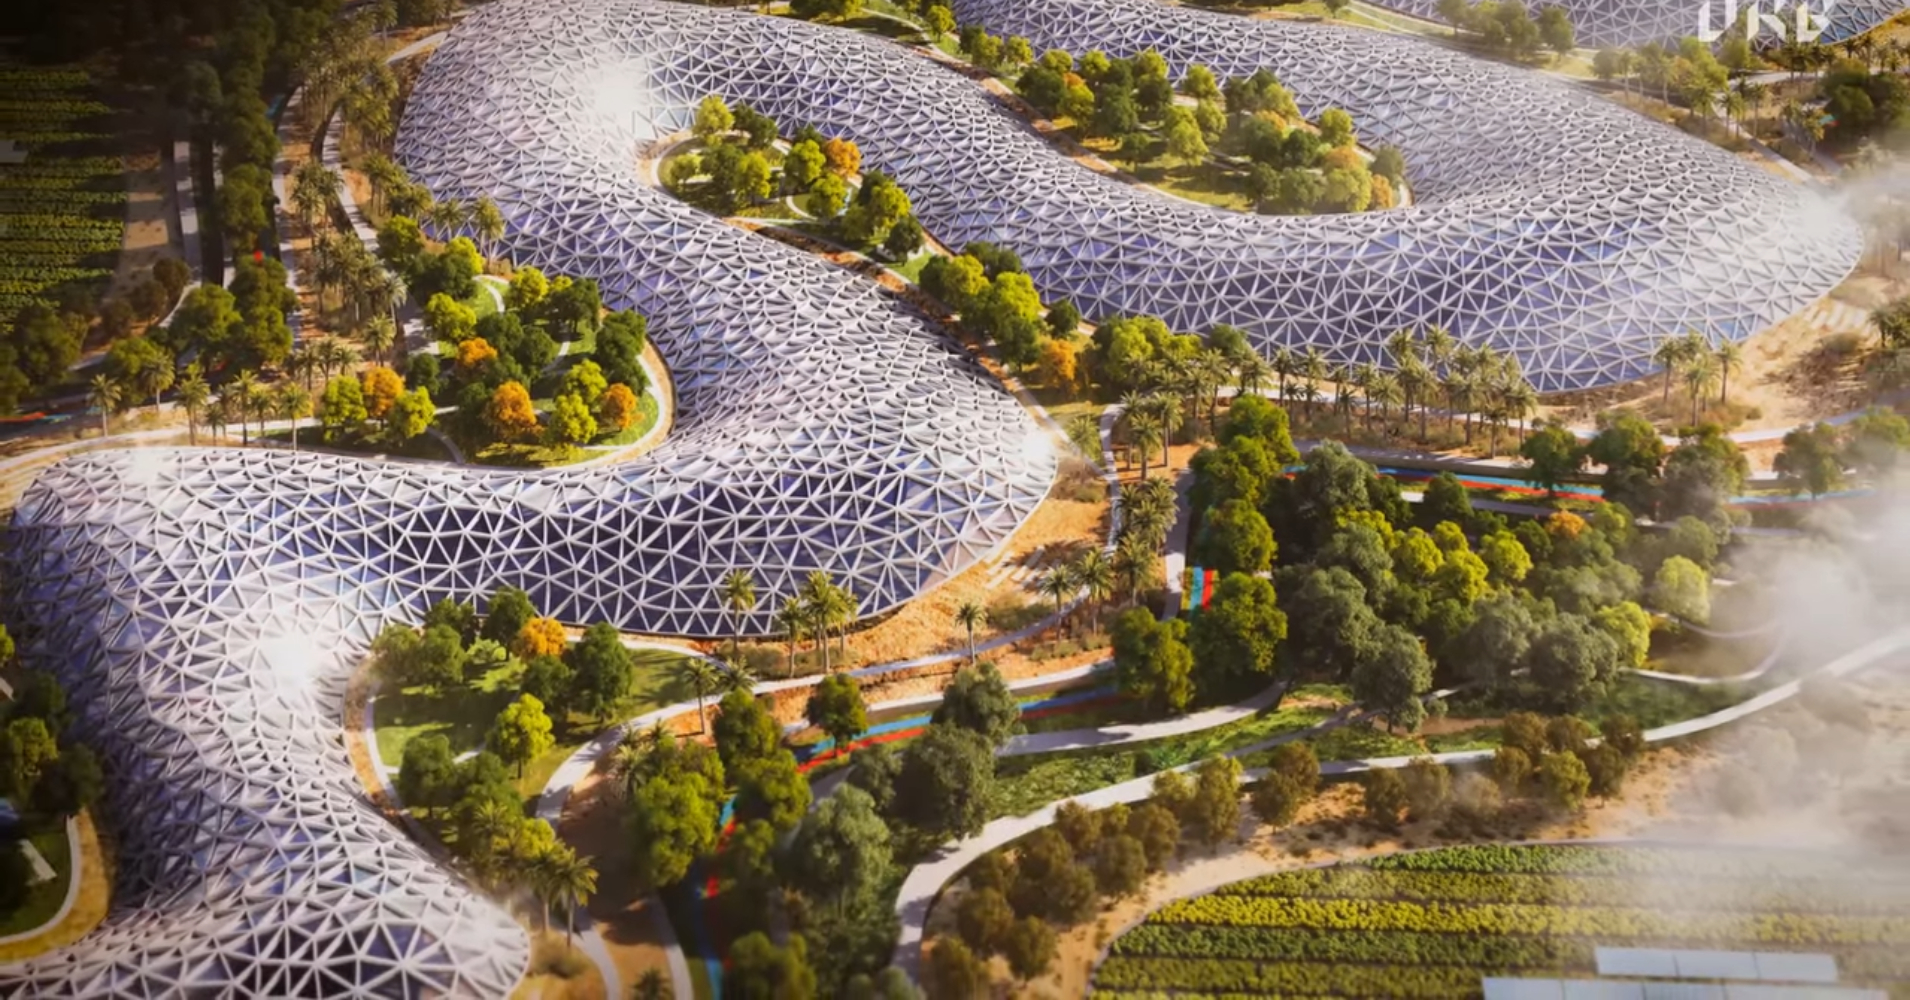 【#Environment】杜拜將啟動Agri Hub計畫建造世上最大農業生態旅遊區，通過寓教於樂、脫碳再生能源項目設施吸引遊客並締造大量就業機會